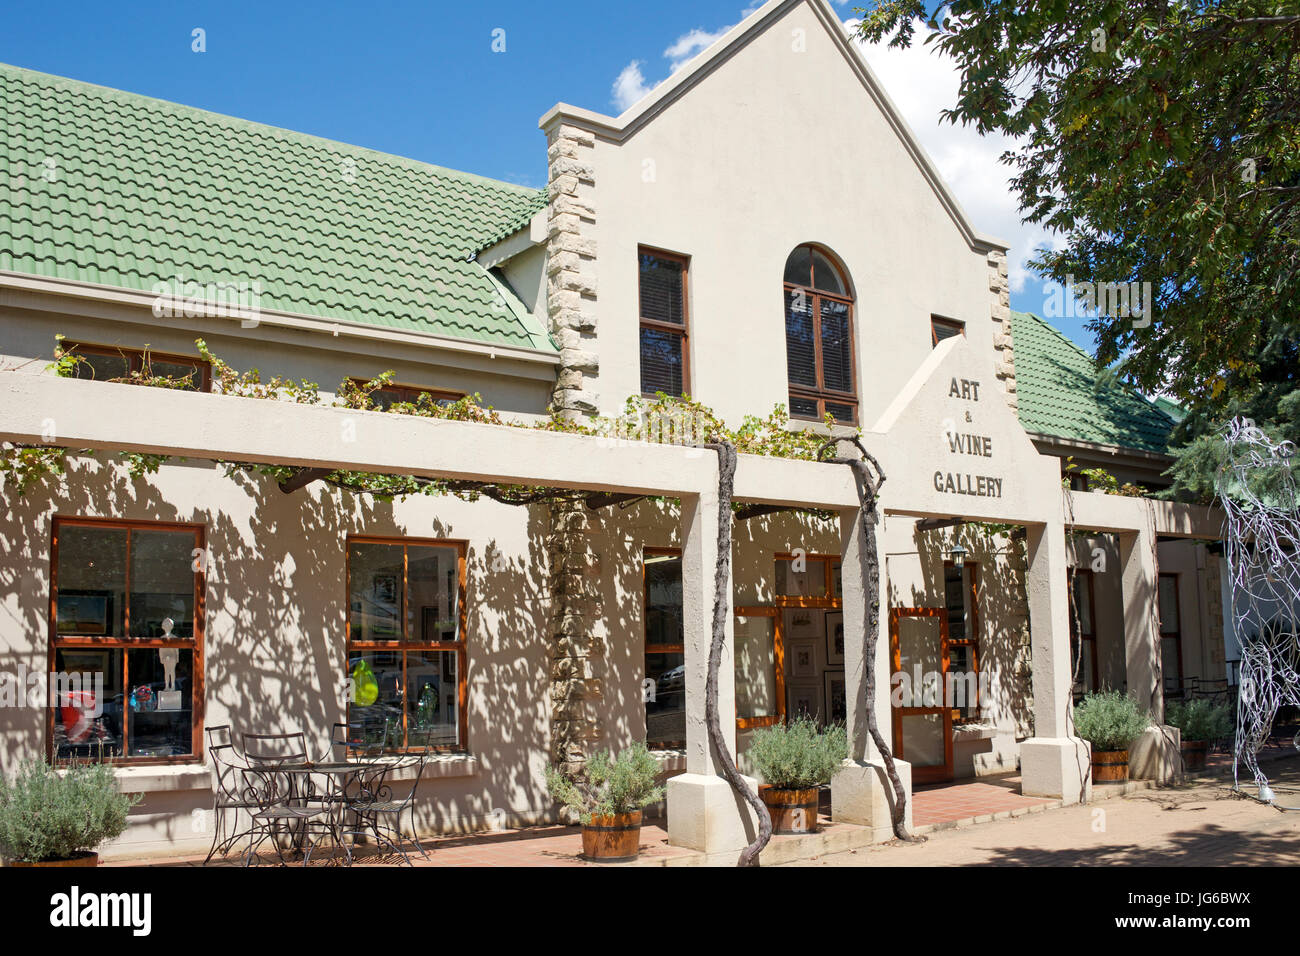 Galería de arte y tienda de vinos Clarens Estado Libre de Sudáfrica Foto de stock